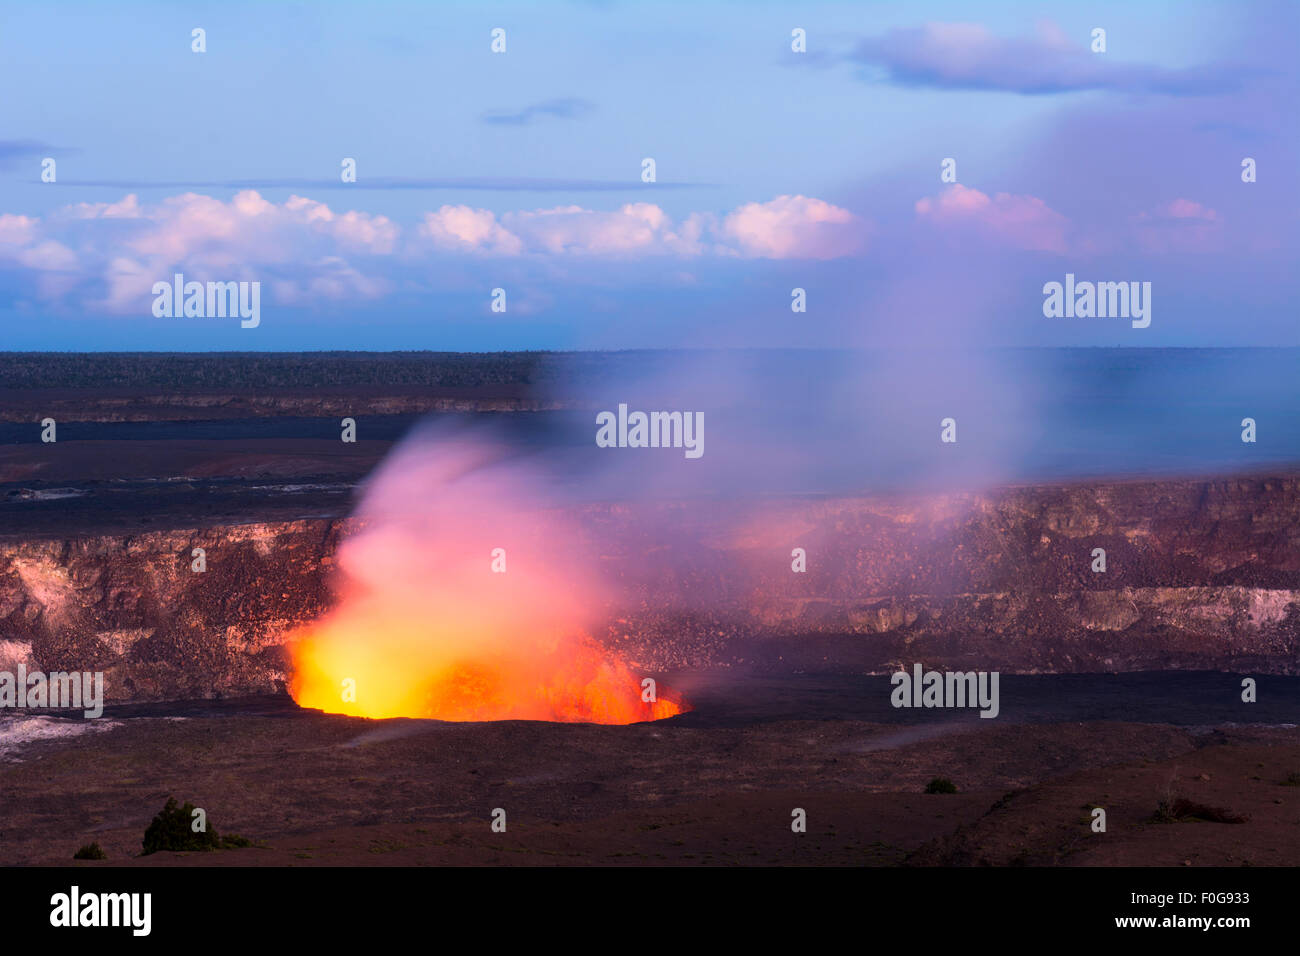 Comme le soleil se couche Kilauea volcano commence à montrer l'éclat de hot lava son évent actif, crachant des roches en fusion comme la fumée des brûlures. Banque D'Images